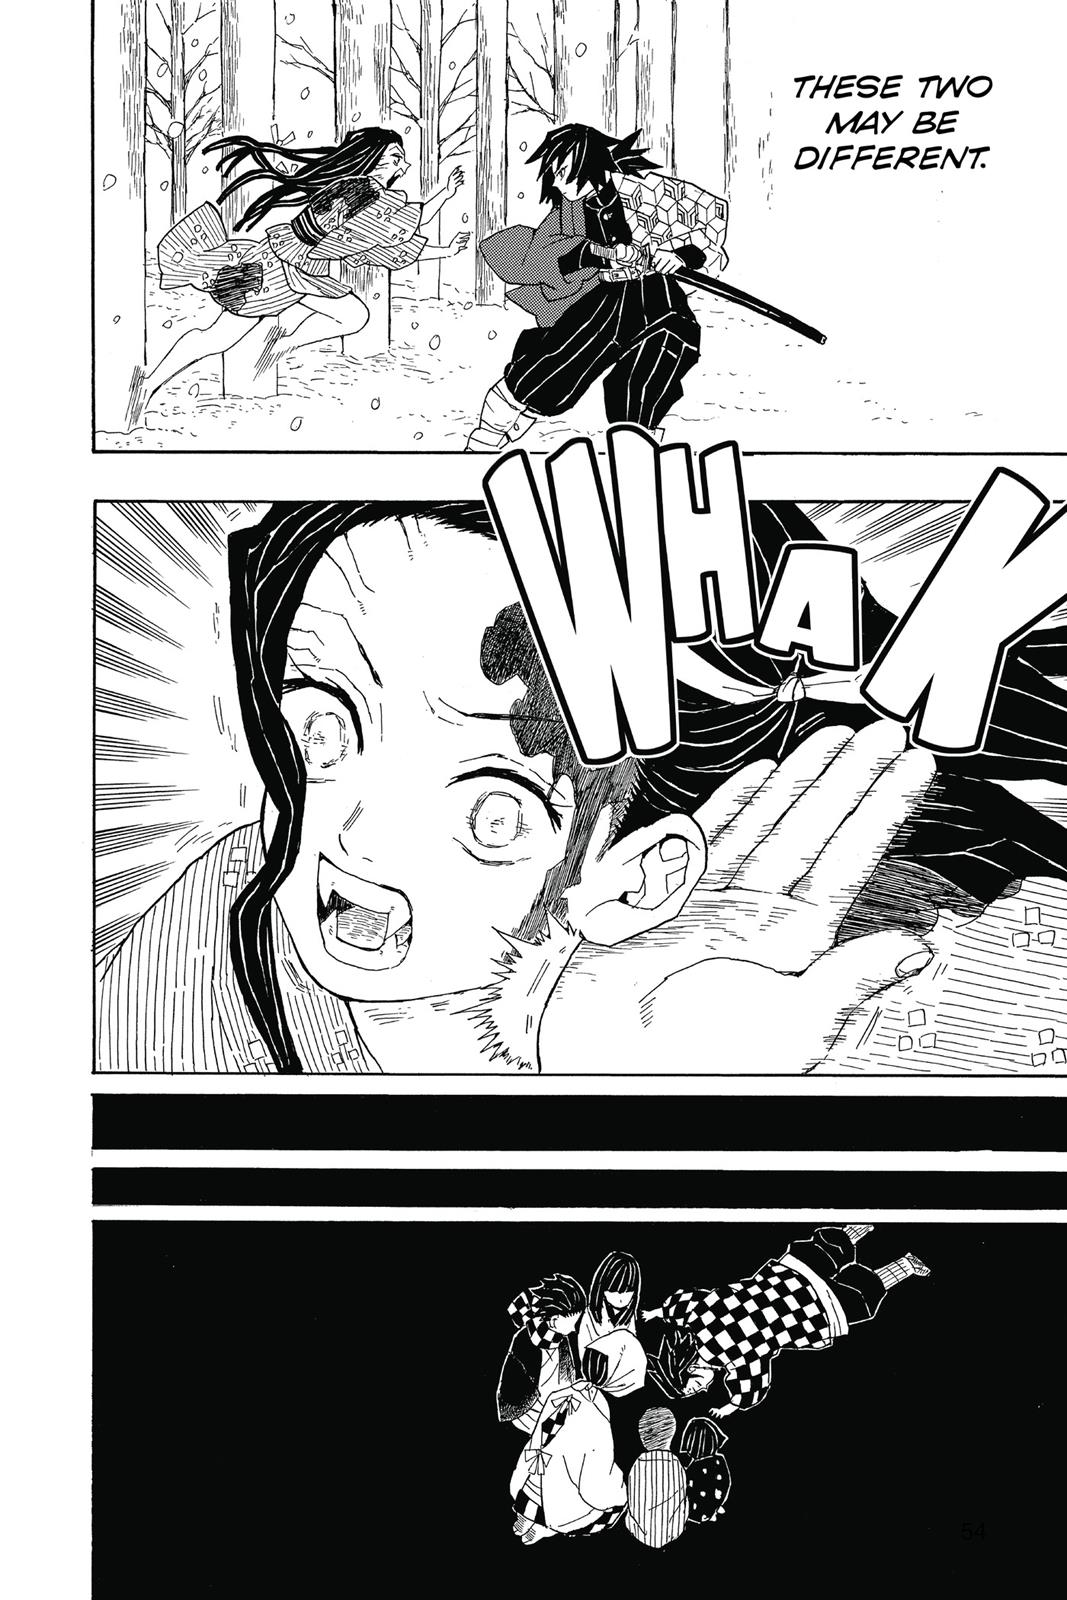 Demon Slayer Manga Manga Chapter - 1 - image 34